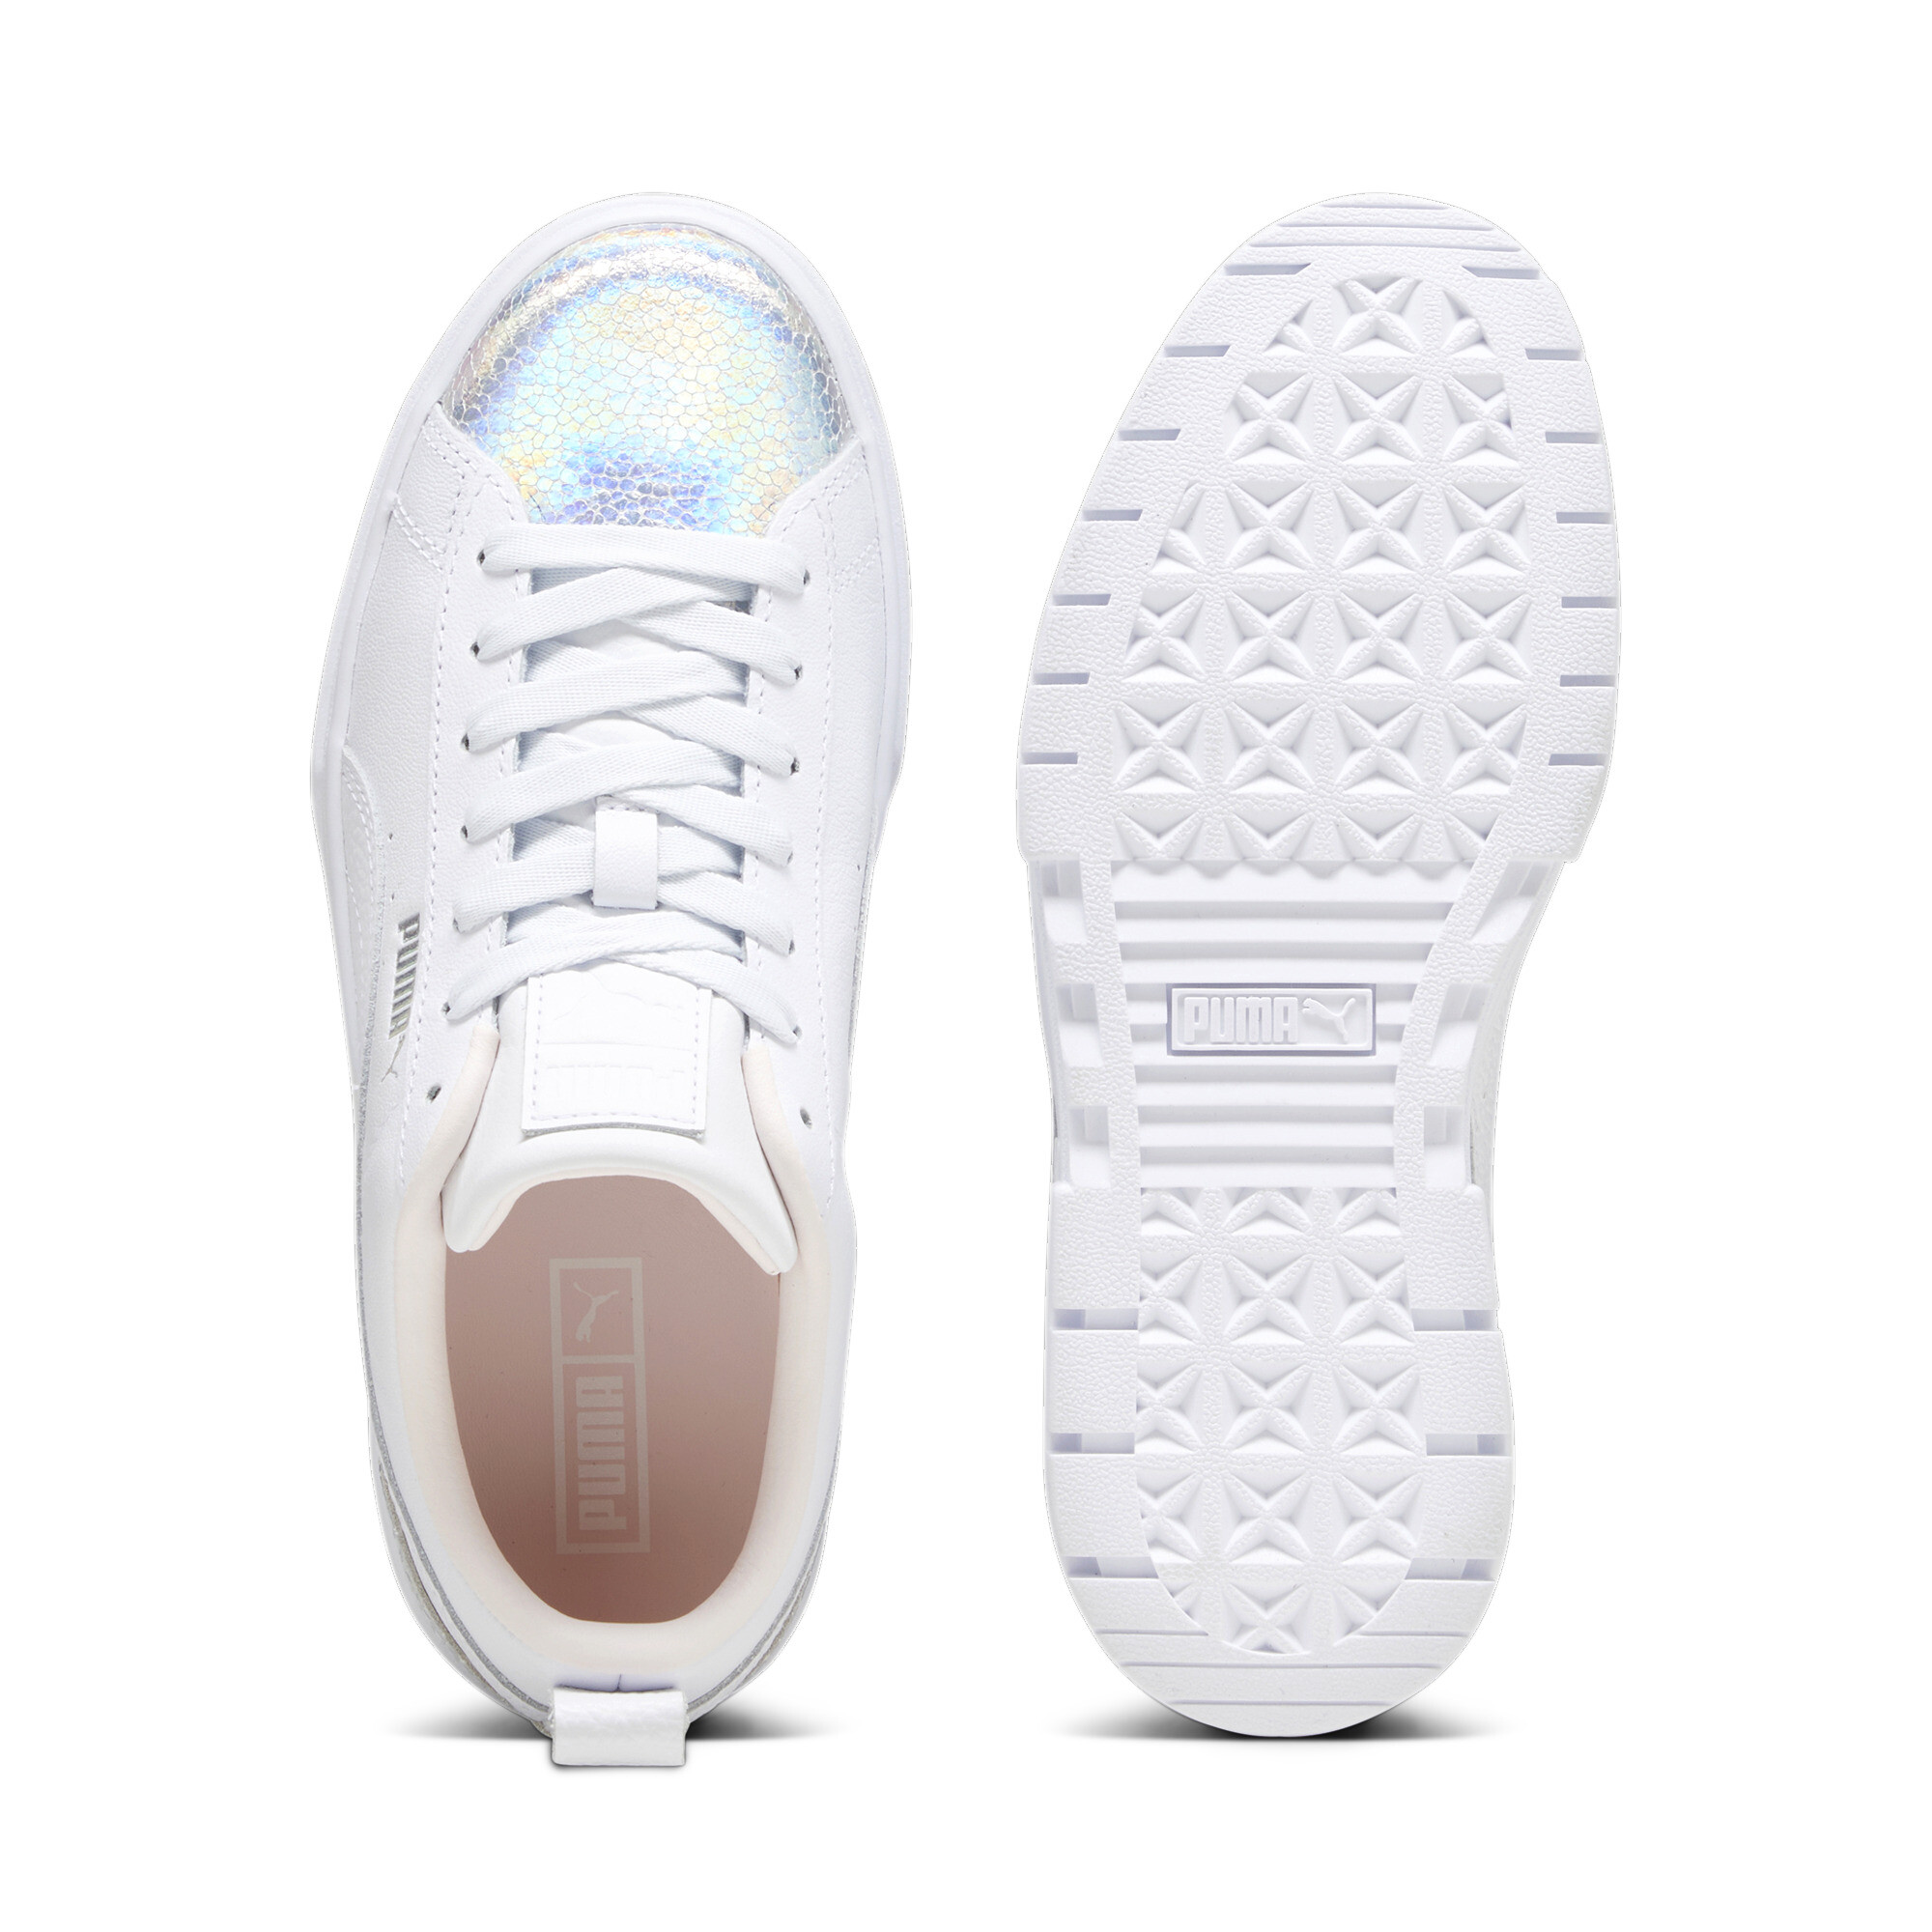 Women's PUMA Mayze Tomorrowland Fashion Sneakers Women In White, Size EU 37.5